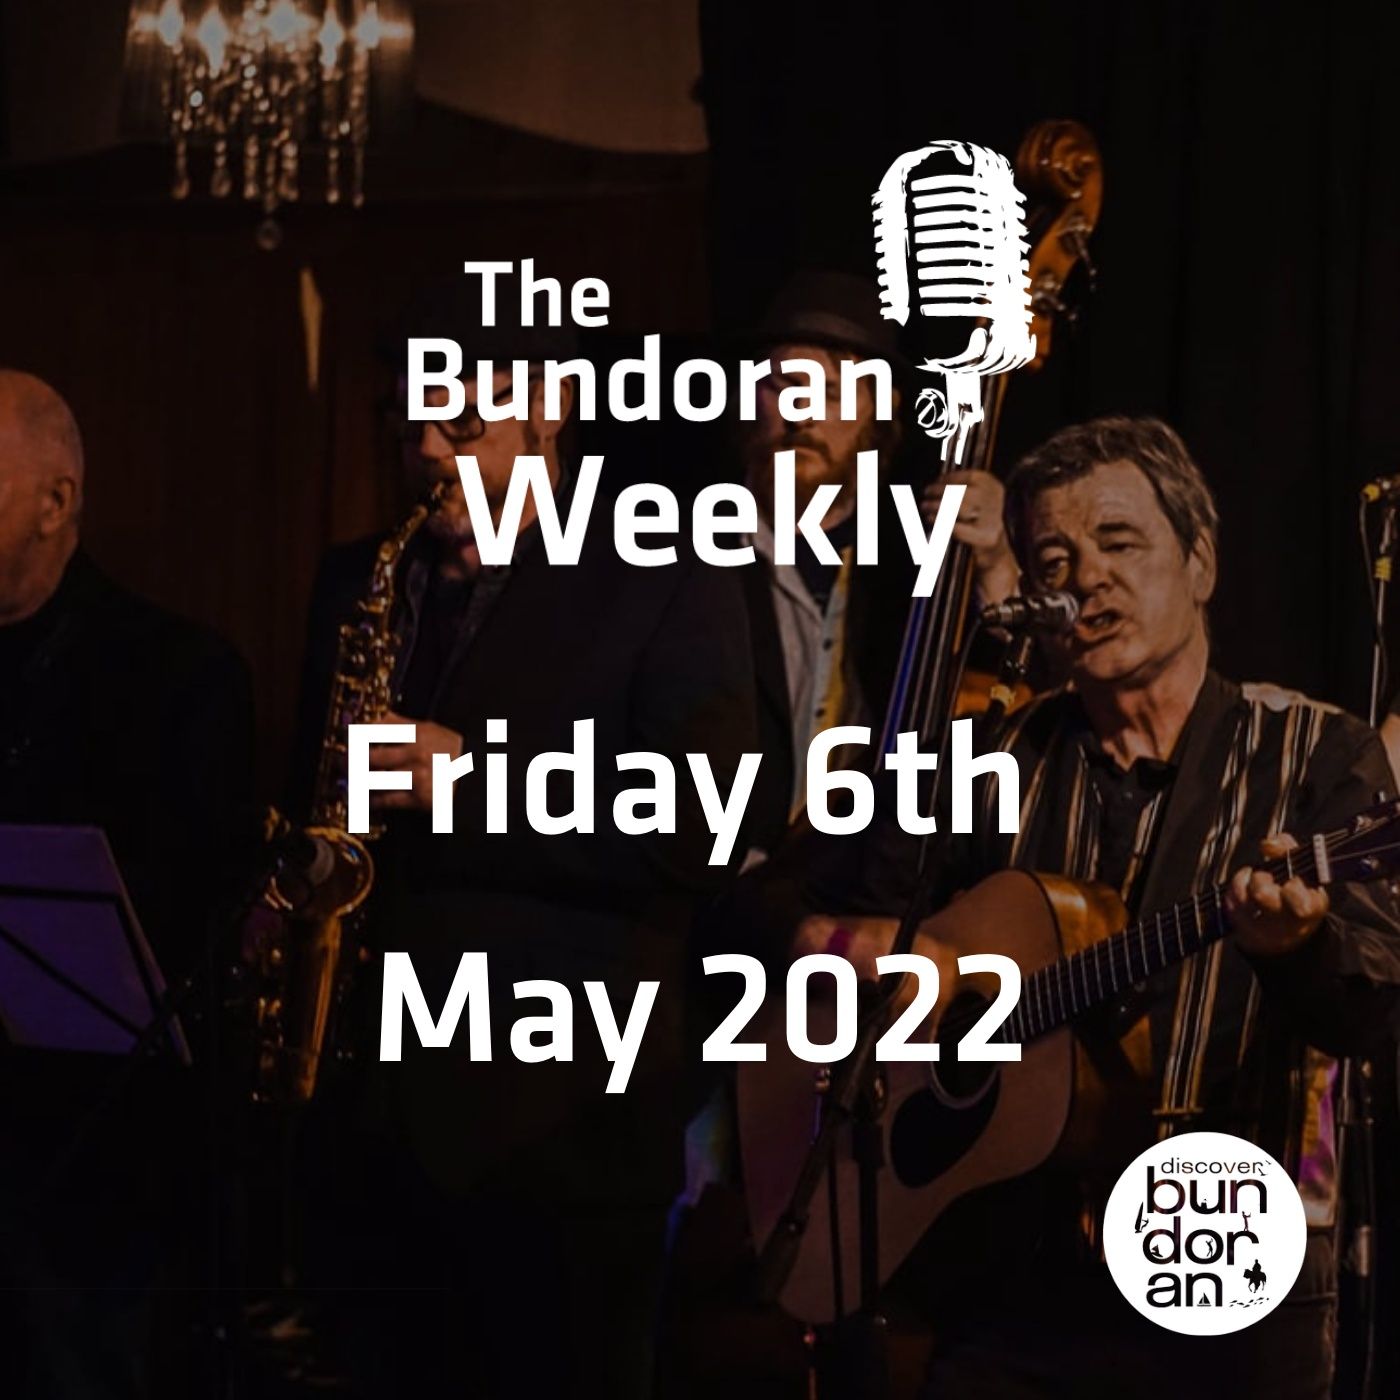 184 - The Bundoran Weekly - Friday 6th May 2022